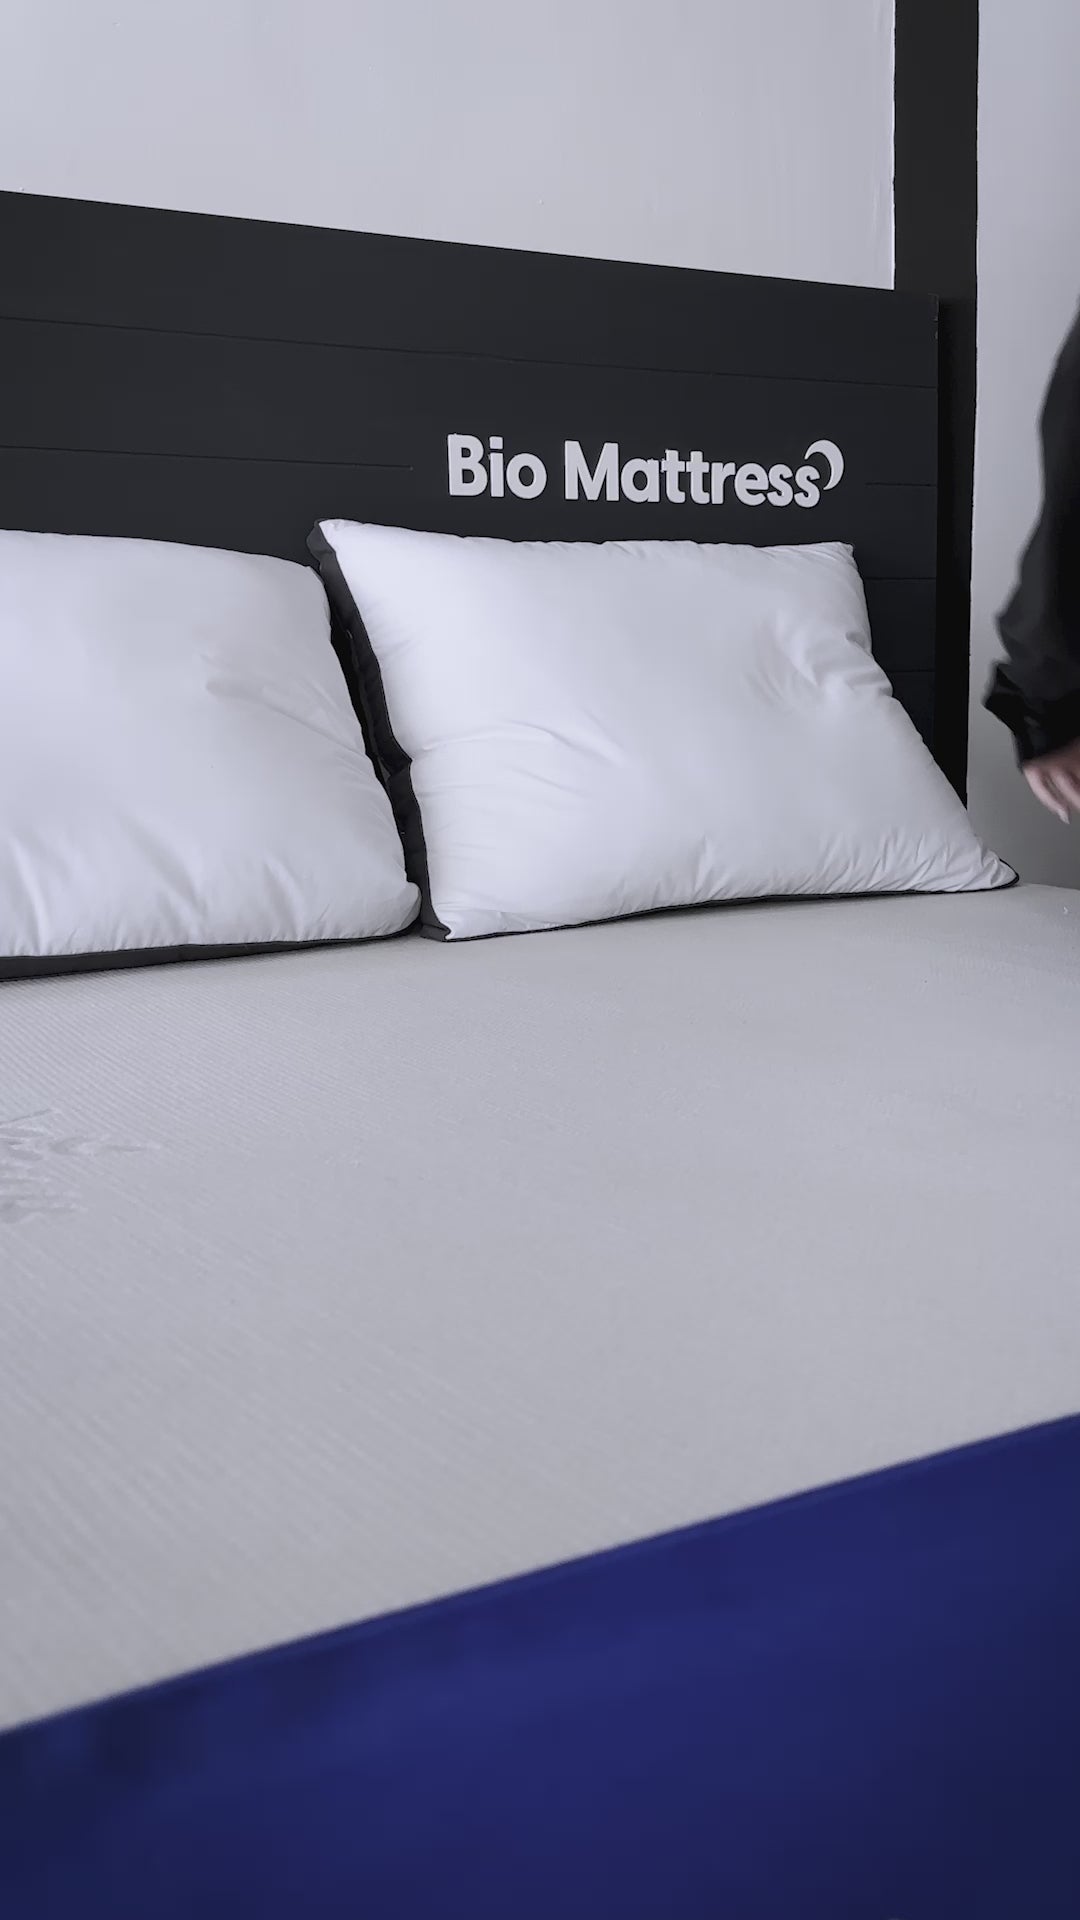 Colchón Bio Mattress Platinum, alcanza el colchón de tus sueños al mejor precio.